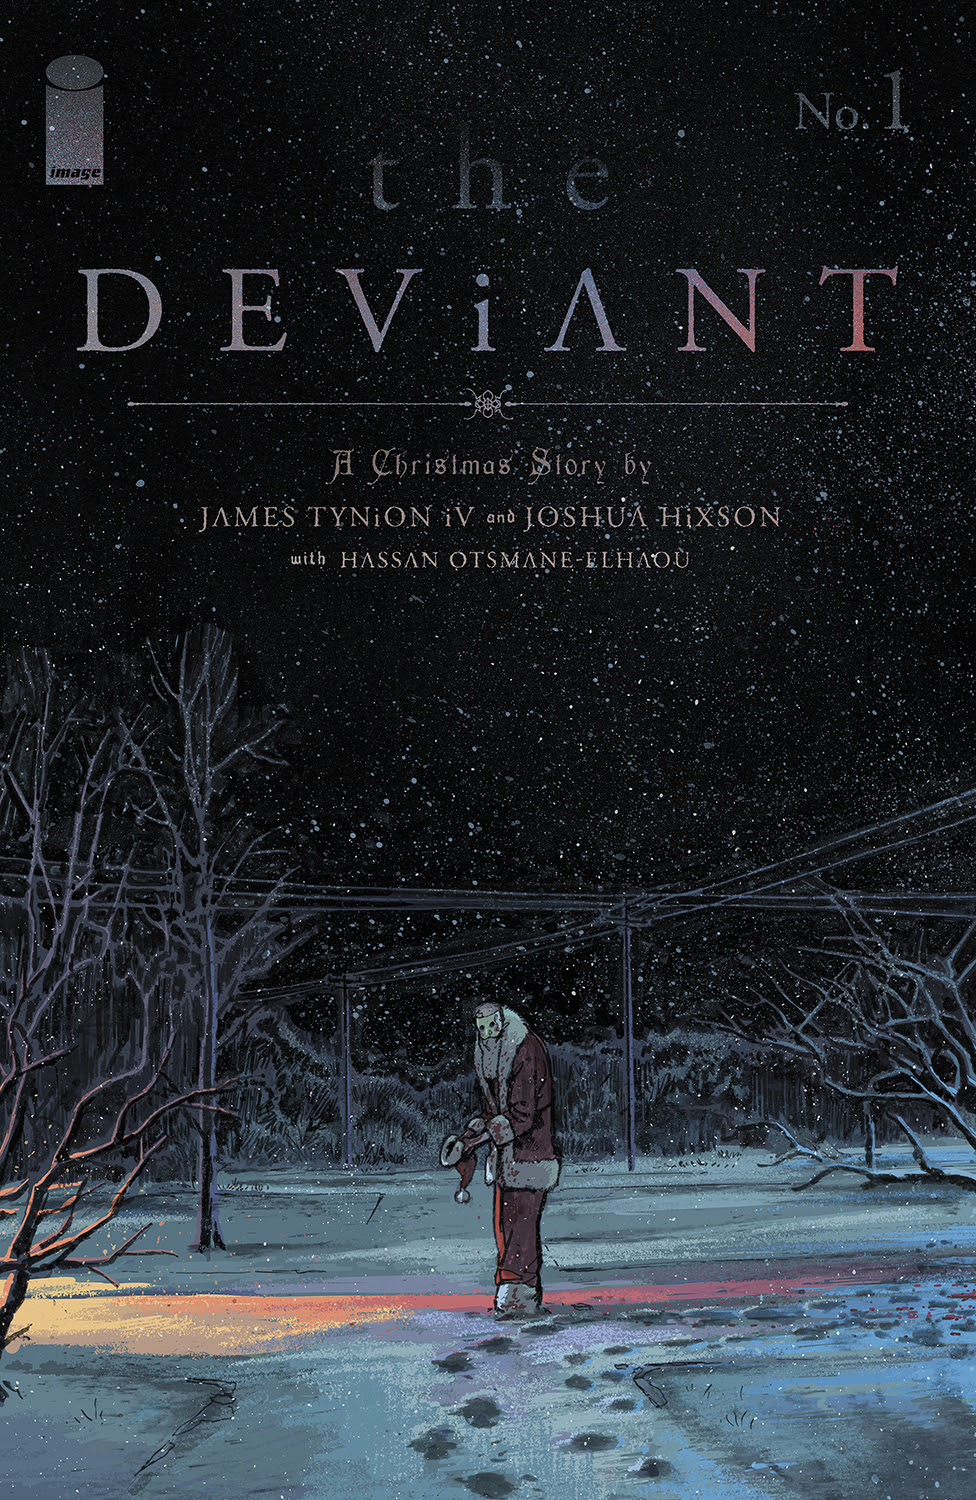 Arte de portada de The Deviant #1.